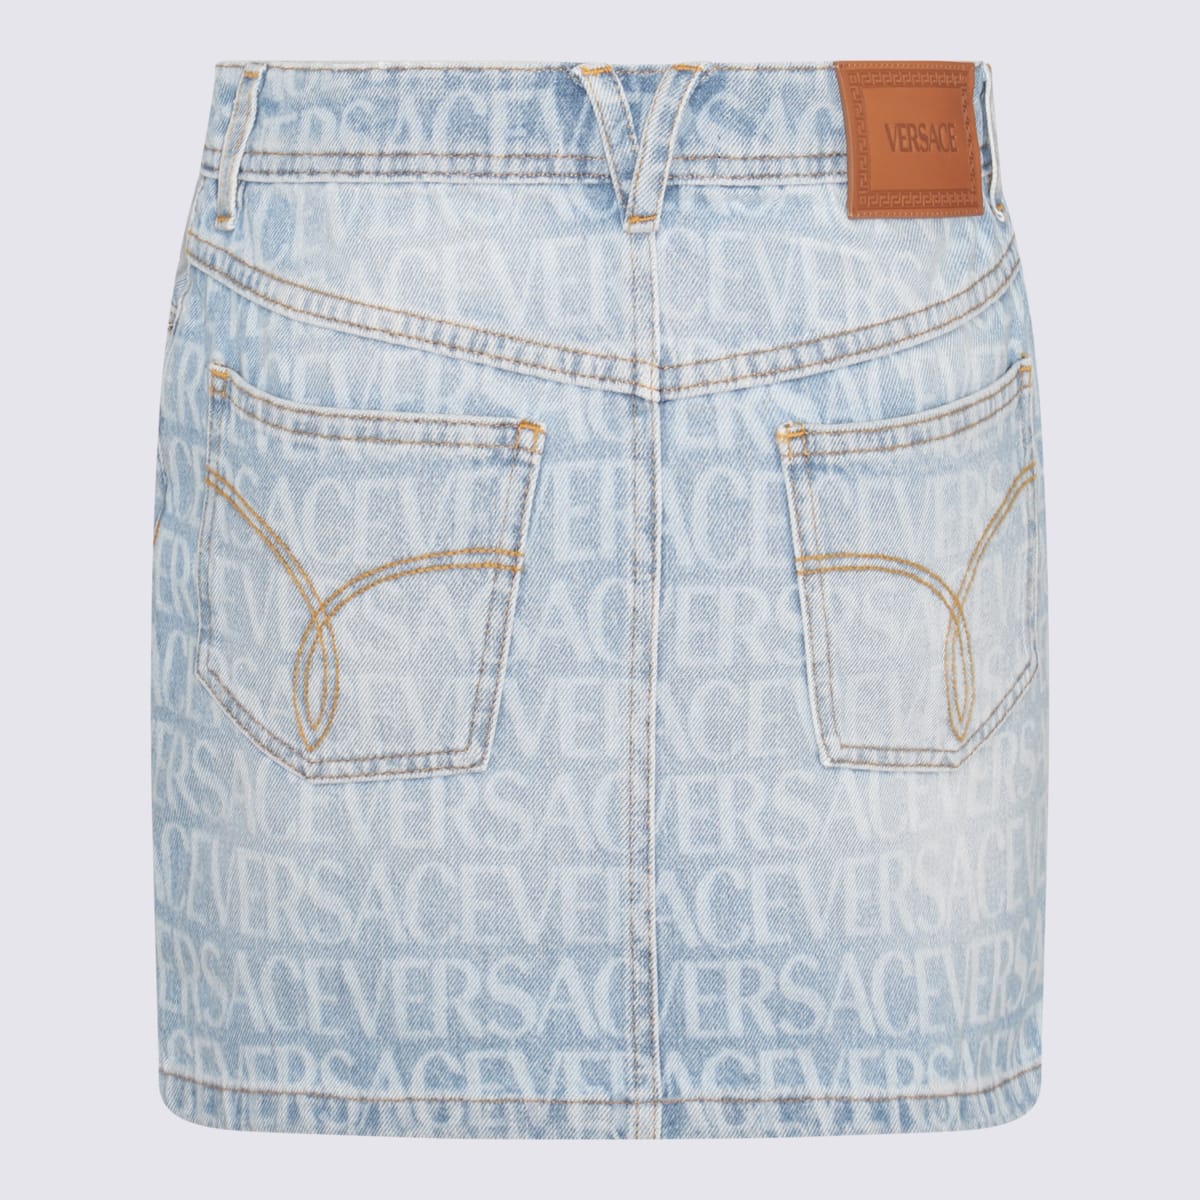 Shop Versace Light Blue Cotton Denim Skirt